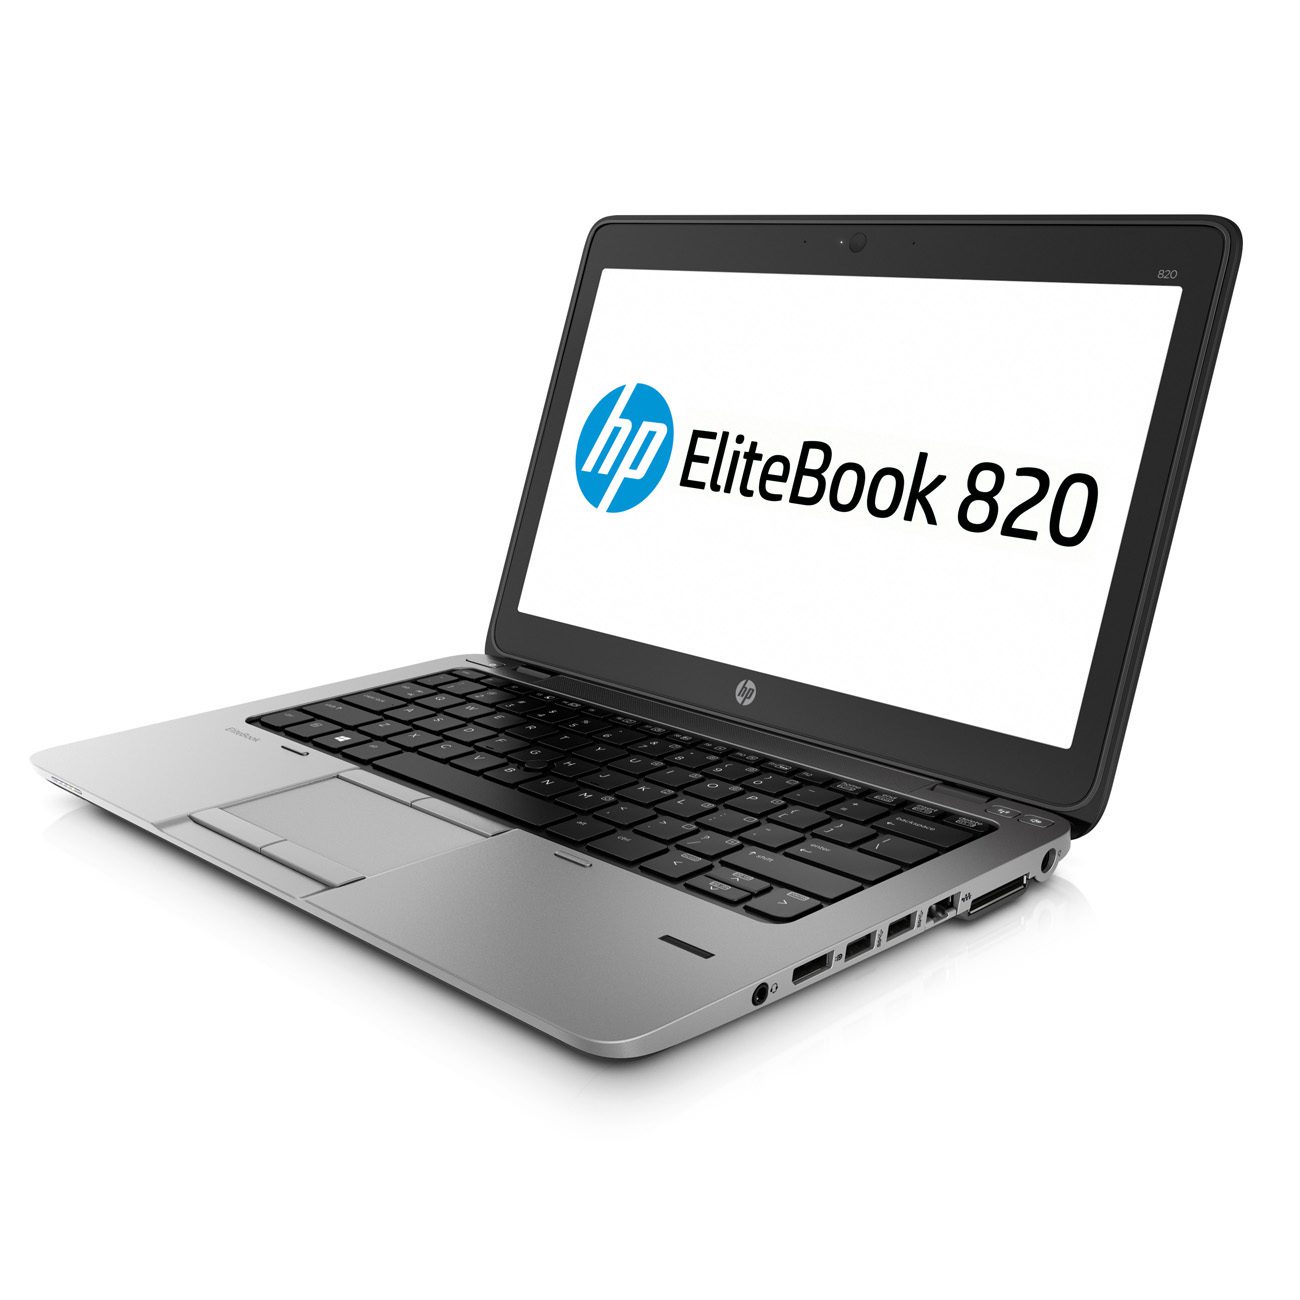 HP EliteBook 820 G1 Notebook Core i7-4600U 8 GB 256 GB SSD 12,5 Zoll HD LED ITALIENISCHES TASTATUR-SIM-MODUL